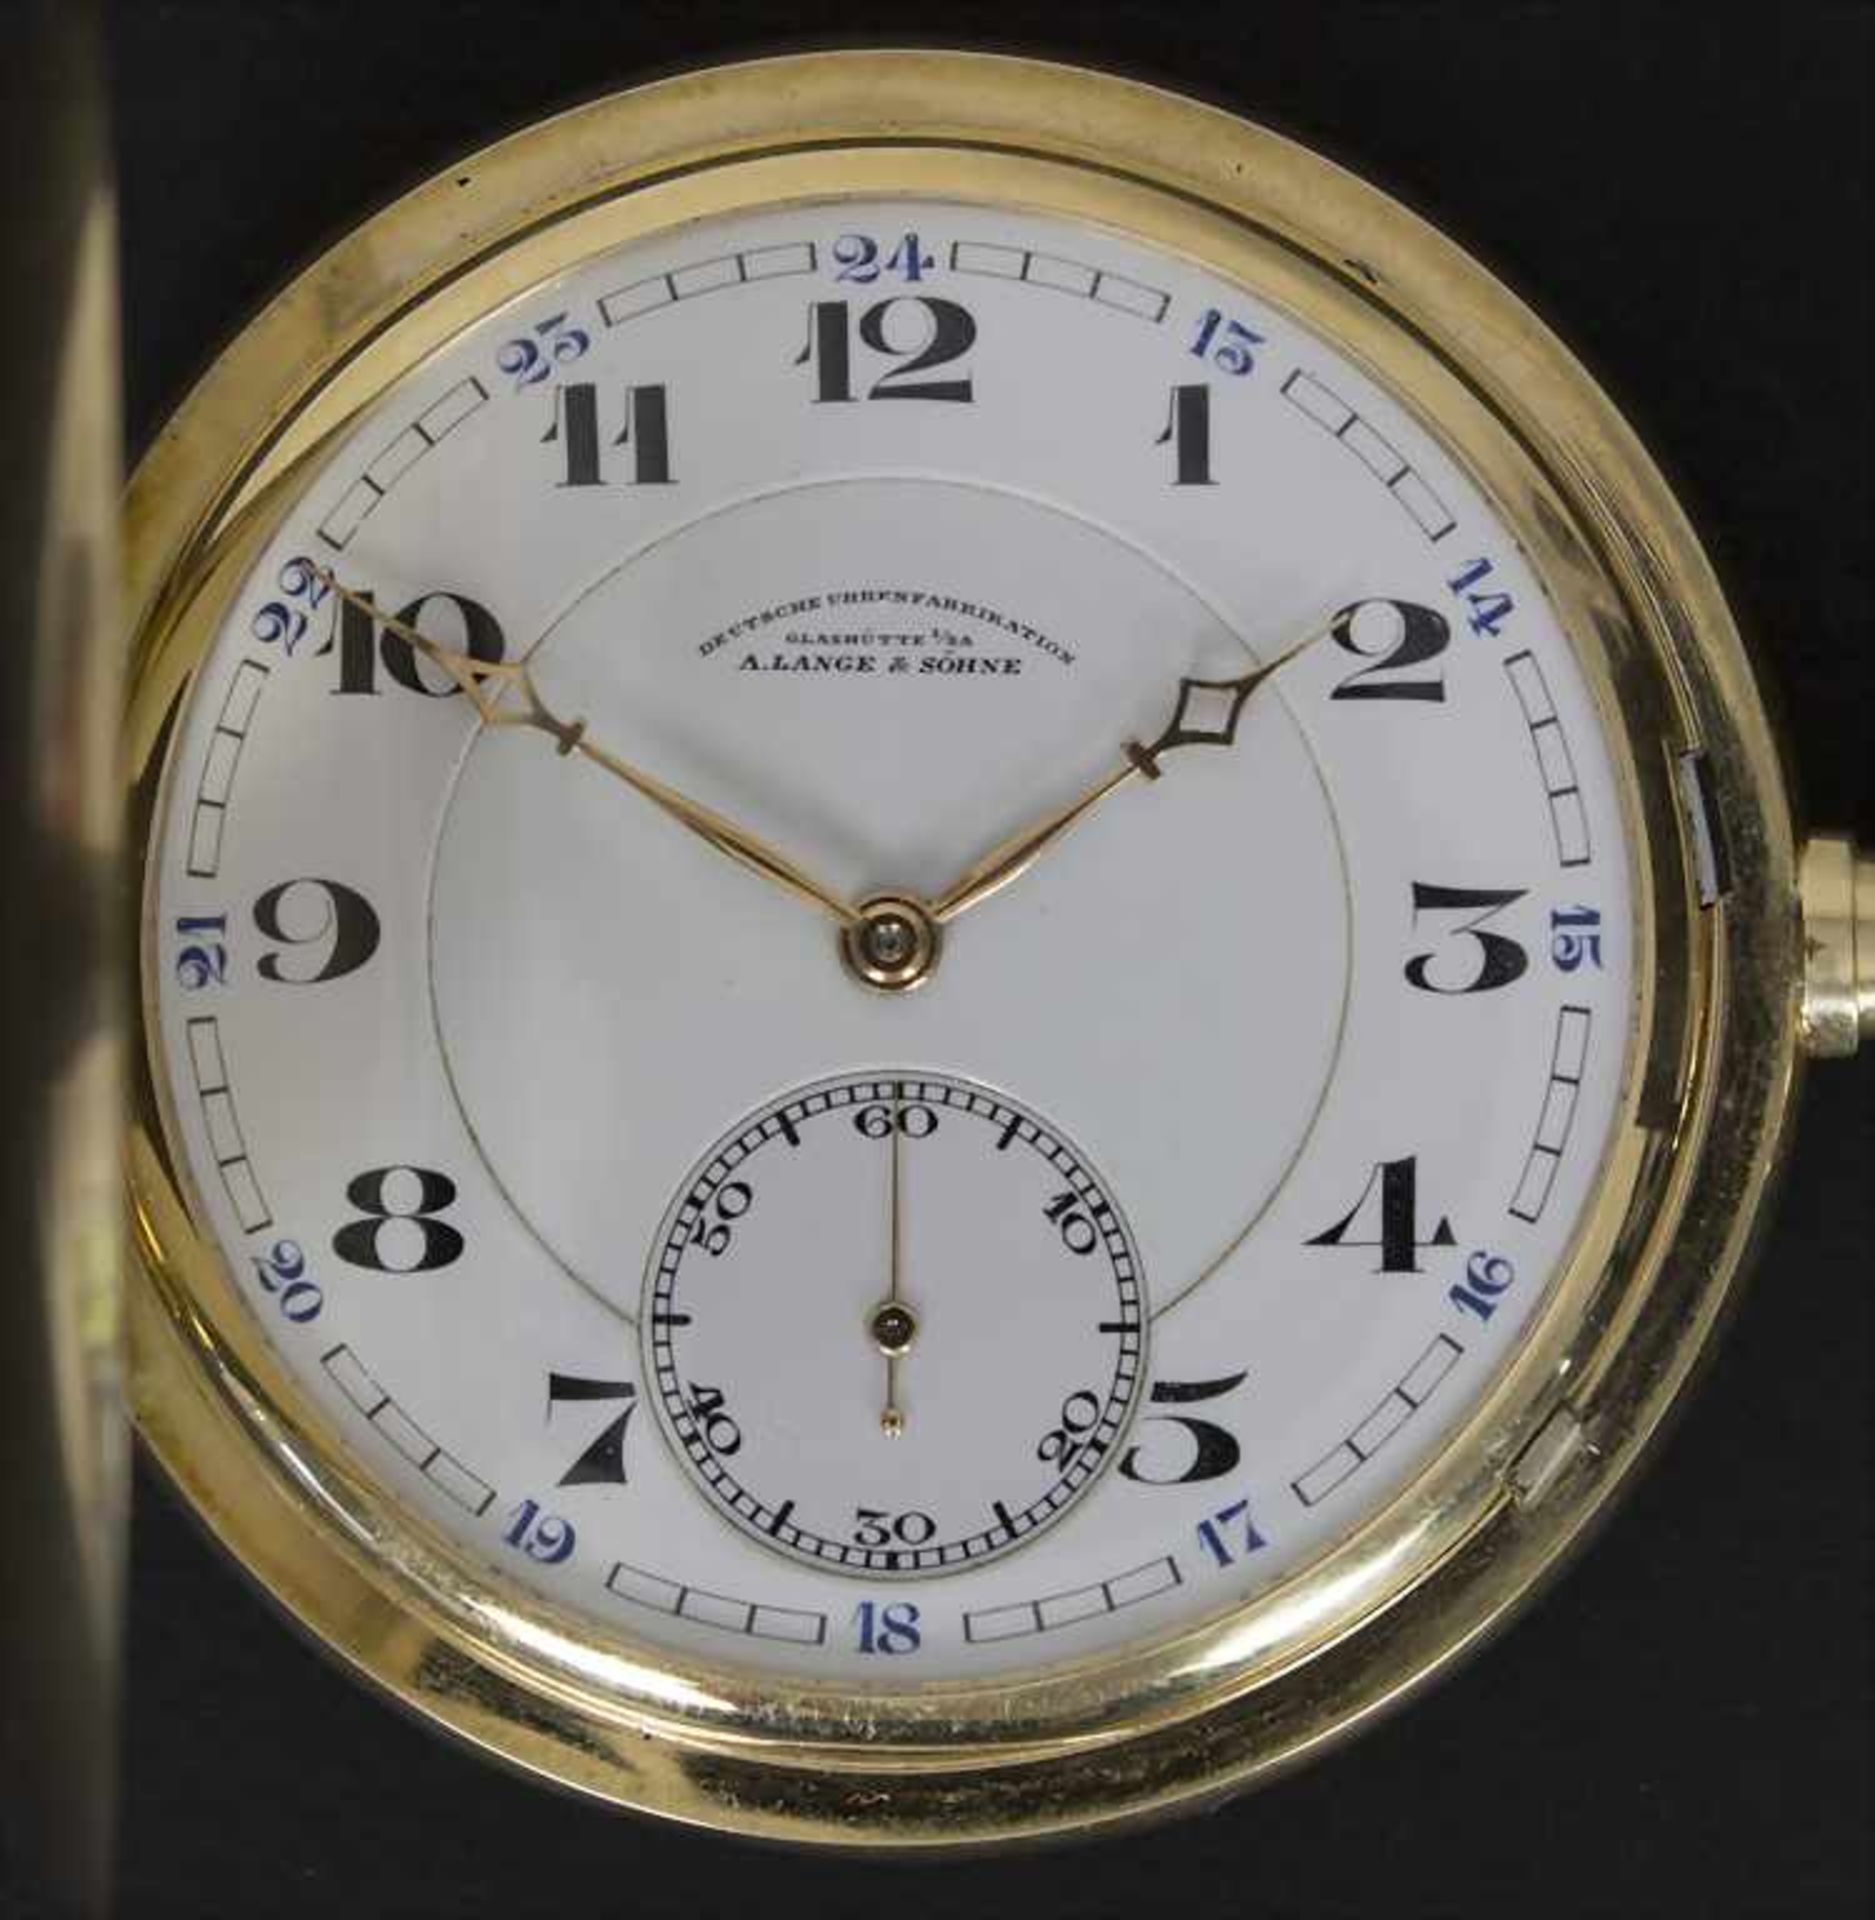 Taschenuhr Savonette / Pocket Watch, A. Lange & Söhne, Glashütte in Sachsen, ca. 1938Hersteller: